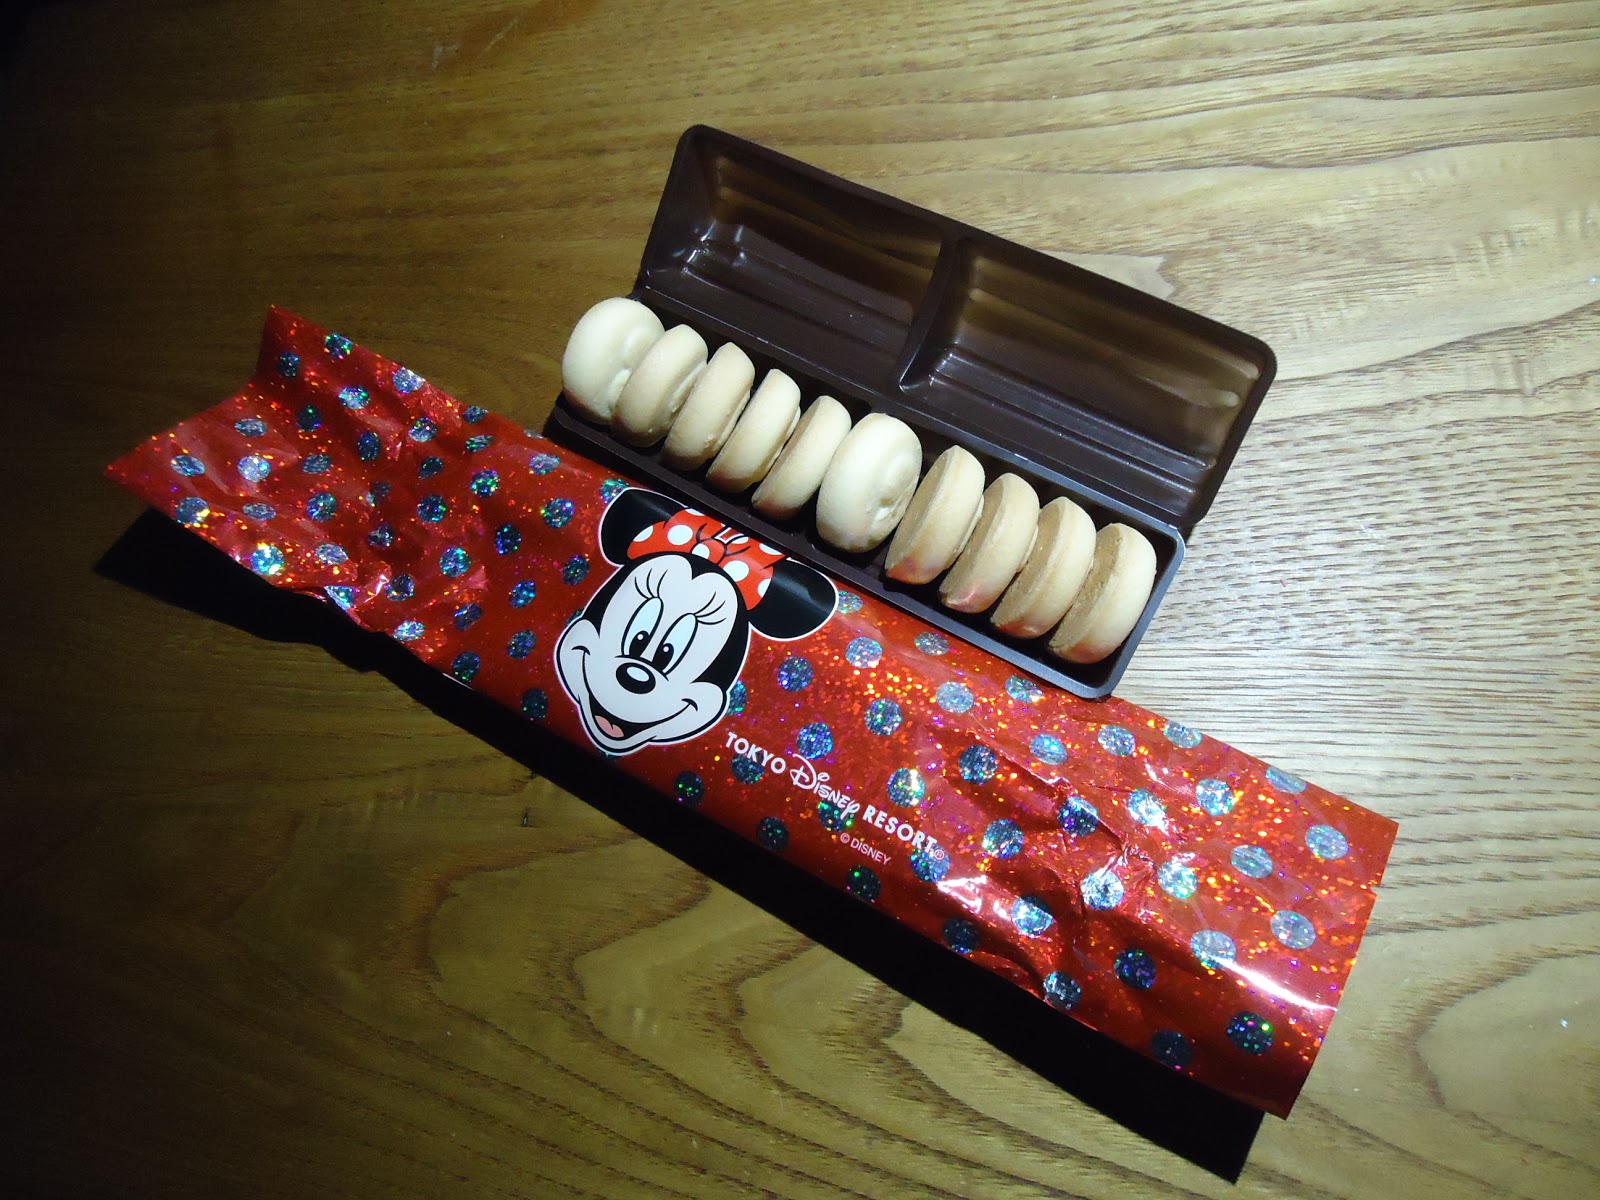 ディズニーのお土産 Tdr ミニー リボンモチーフ チョコインクッキー袋 美十 ぼくのケチリッチな節約日記